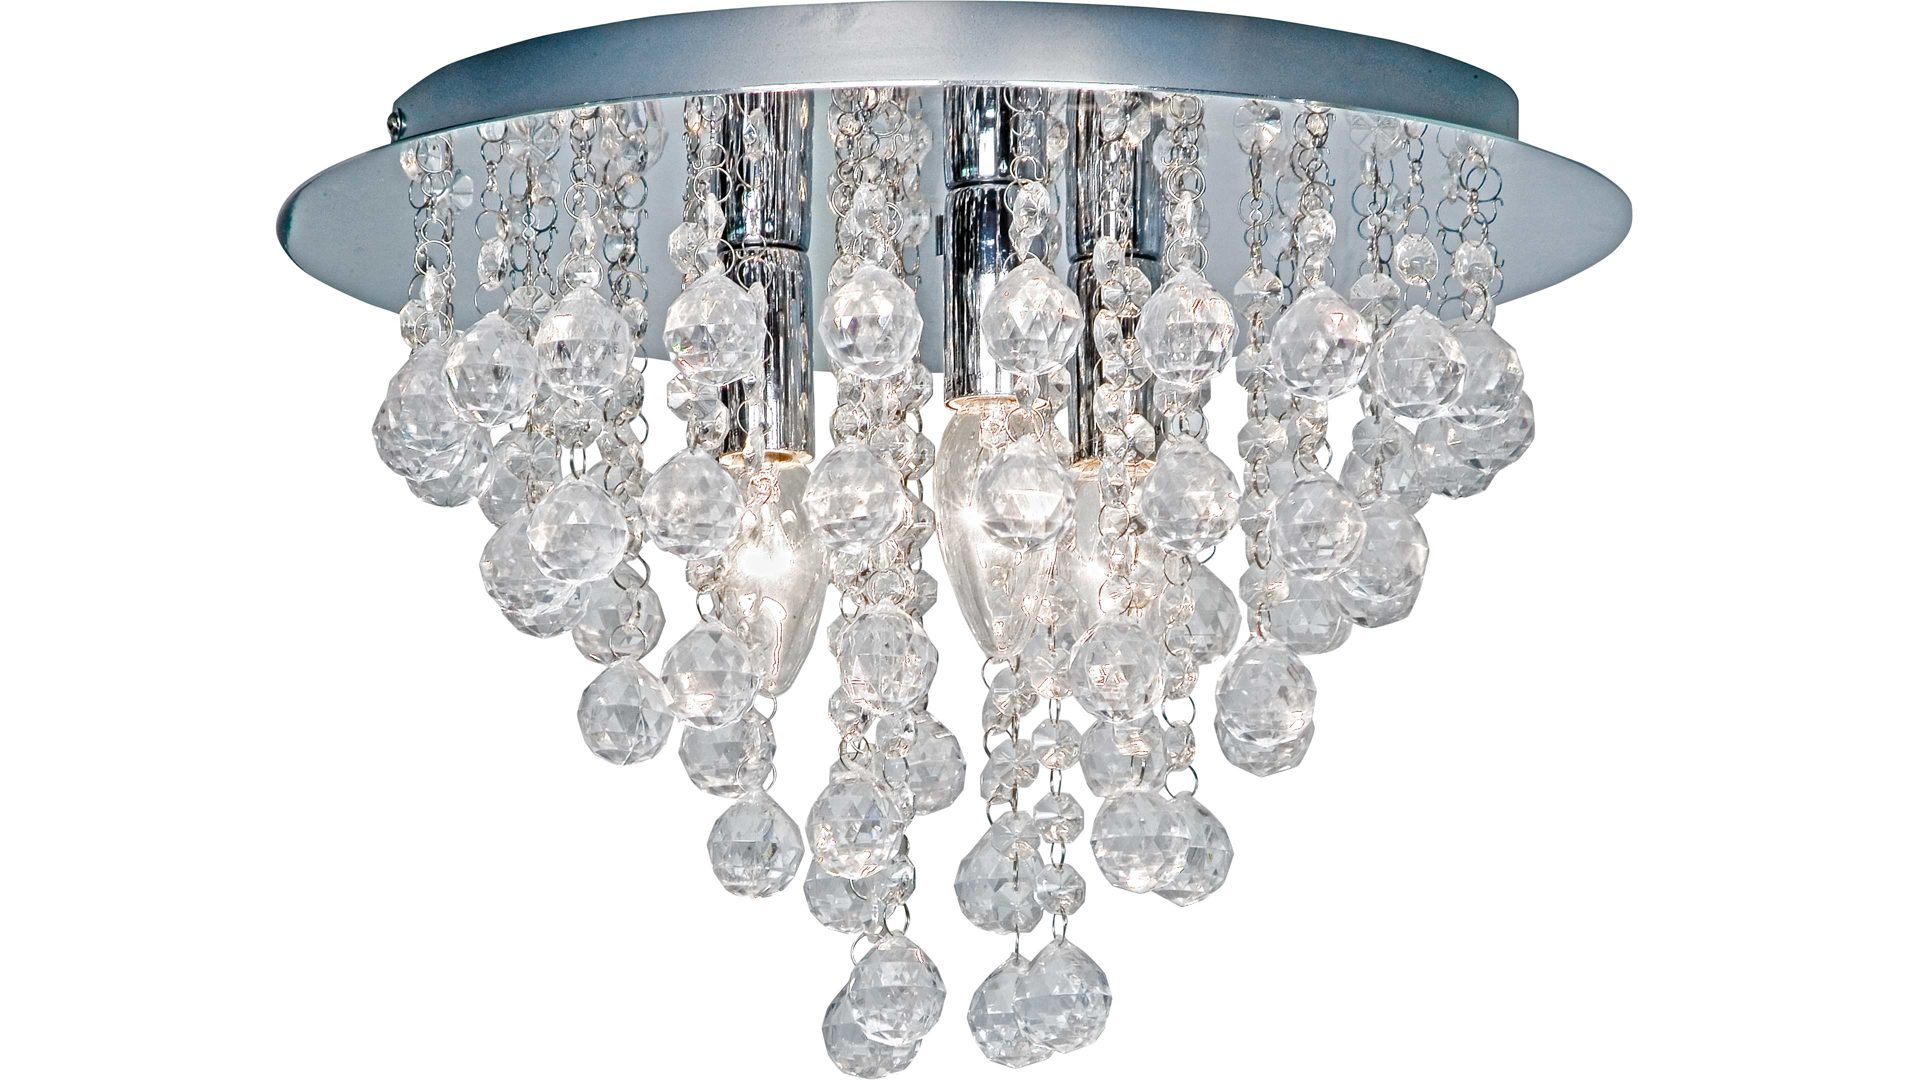 Deckenleuchte Art home - nino leuchten aus Kunststoff in Transparent Nino Deckenleuchte London - Deckenlampe verchromtes Metall & Acrylbehang – Durchmesser ca. 38 cm